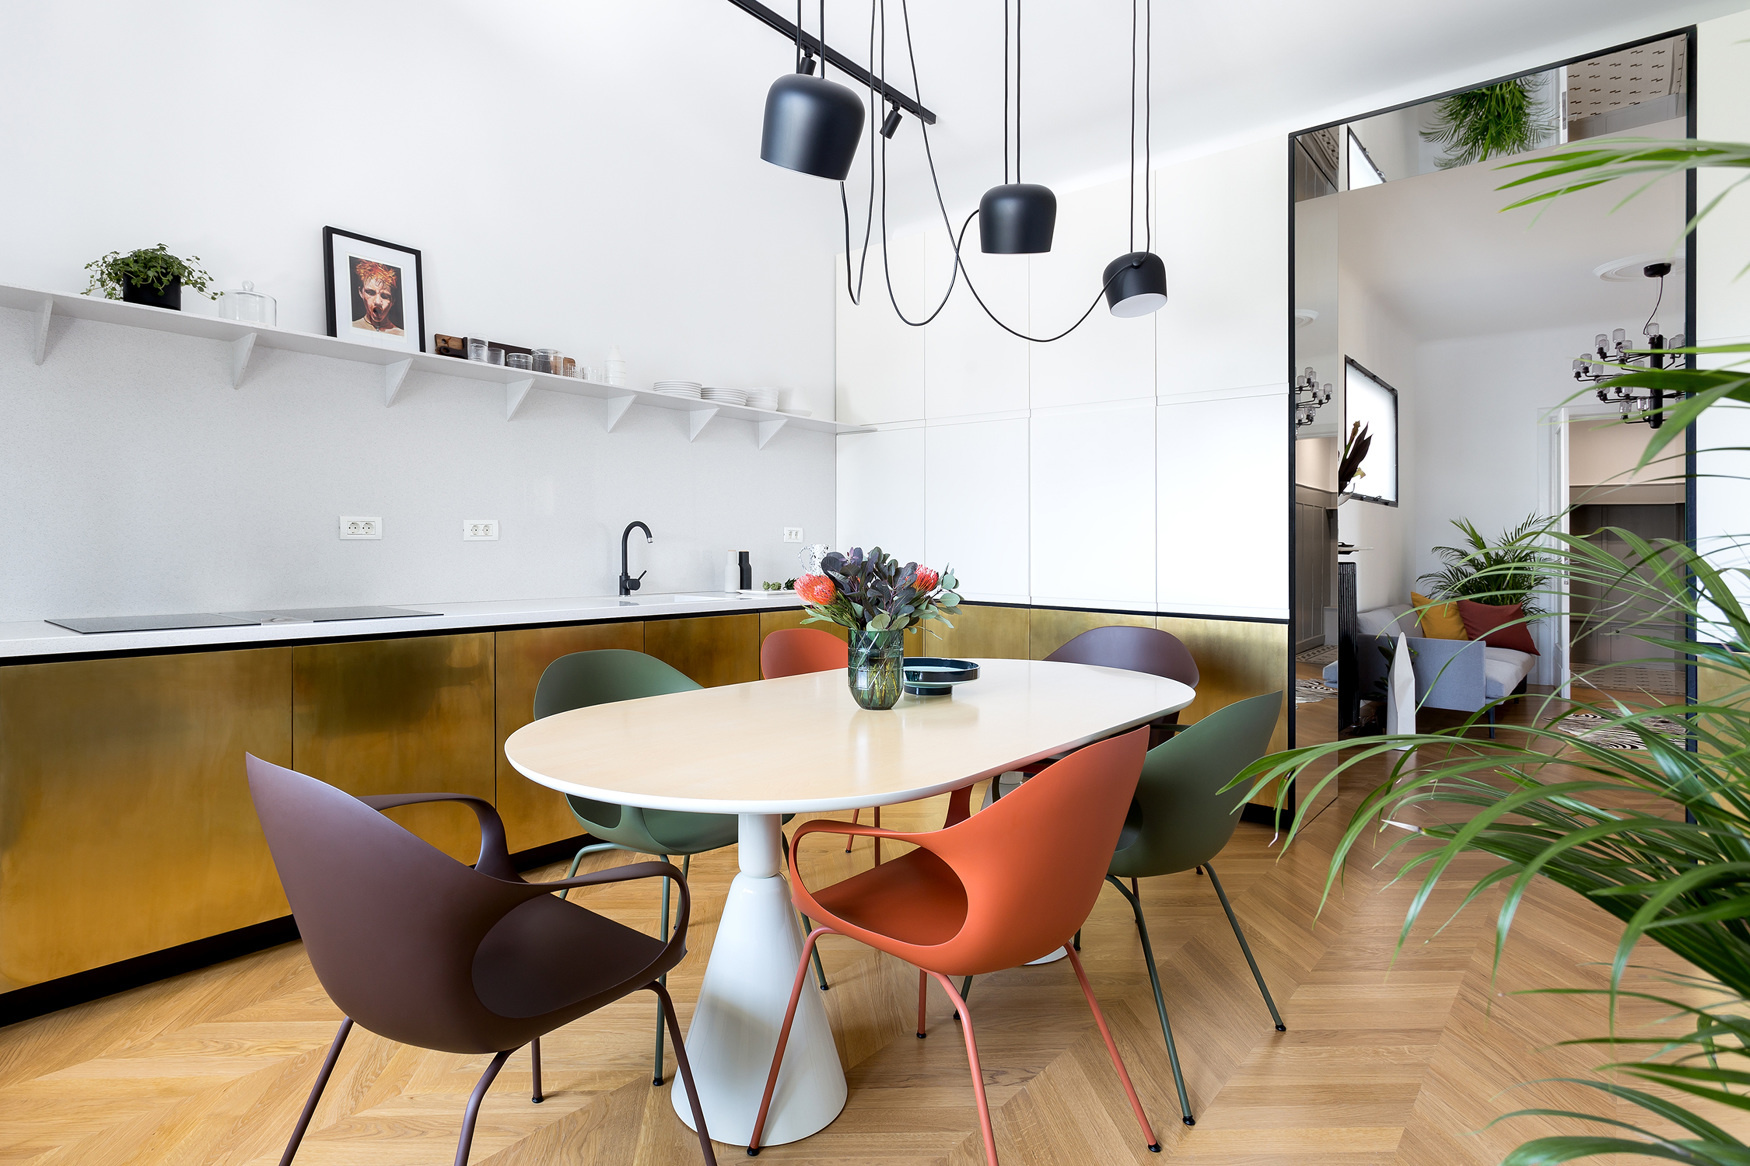 Phòng bếp kết hợp phòng ăn trong căn hộ tại Thủ đô Bucharest (Rumani) do Bogdan Chokodeik thiết kế với bộ ghế ăn nhiều màu sắc nổi bật xung quanh chiếc bàn hình oval. Ngoài ra nó còn gây ấn tượng bởi hệ tủ bếp dưới ốp đồng thau sang chảnh.